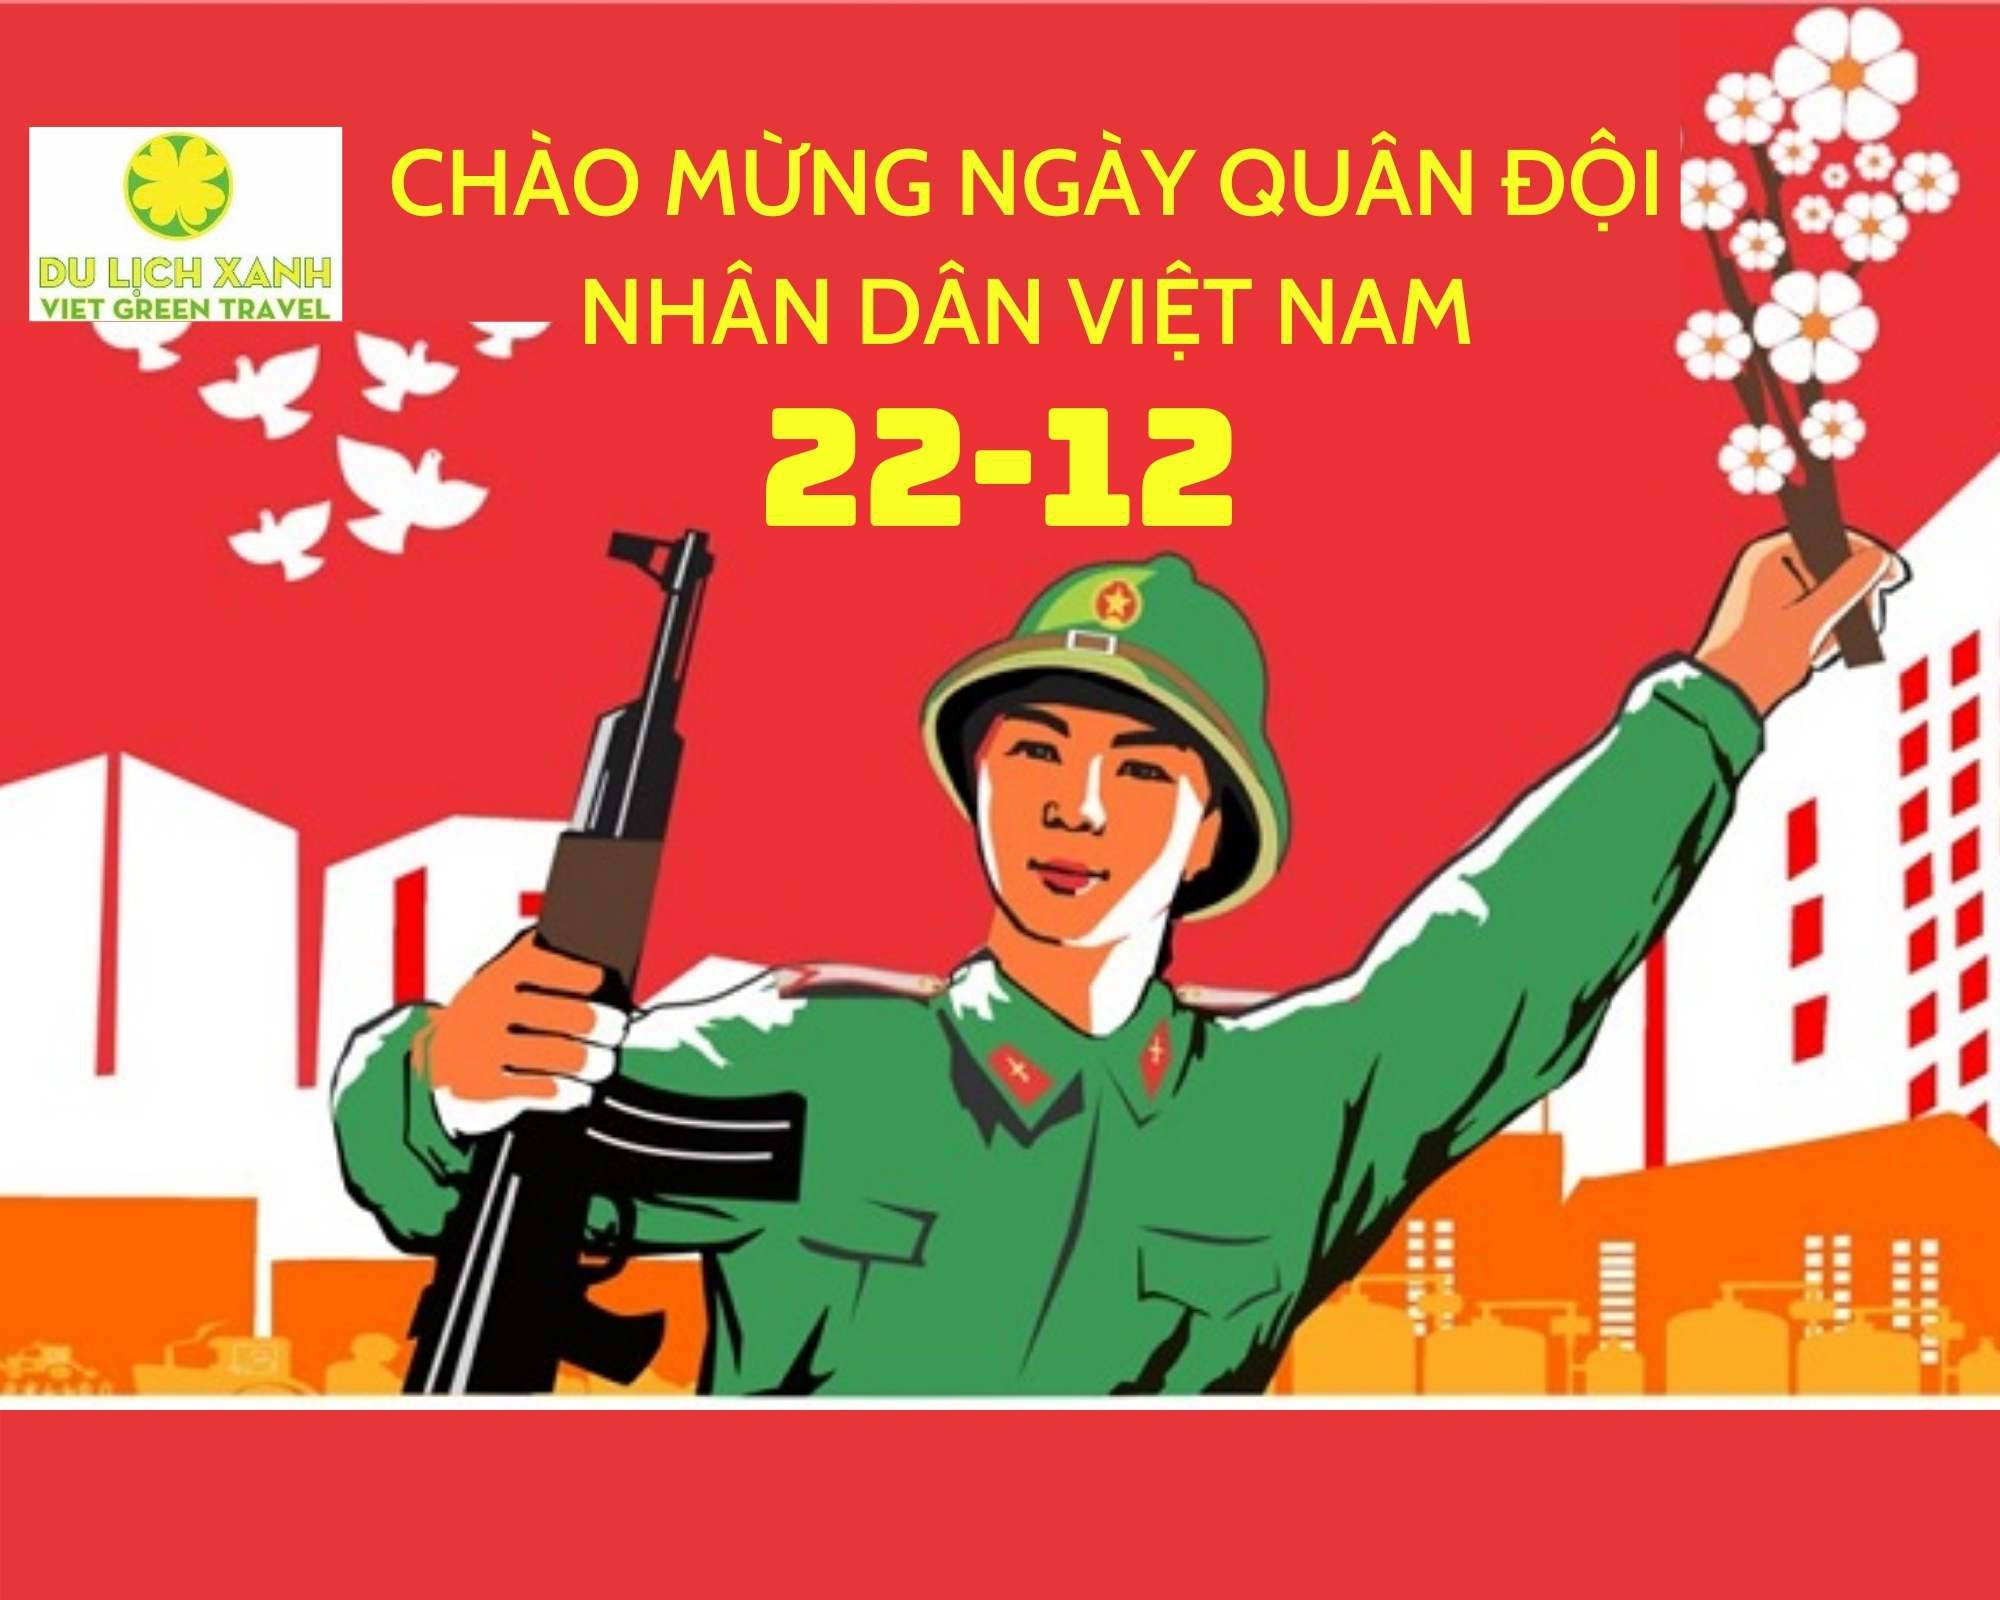 Ngày Quân đội nhân dân Việt Nam 22/12 | Lịch sử và ý nghĩa